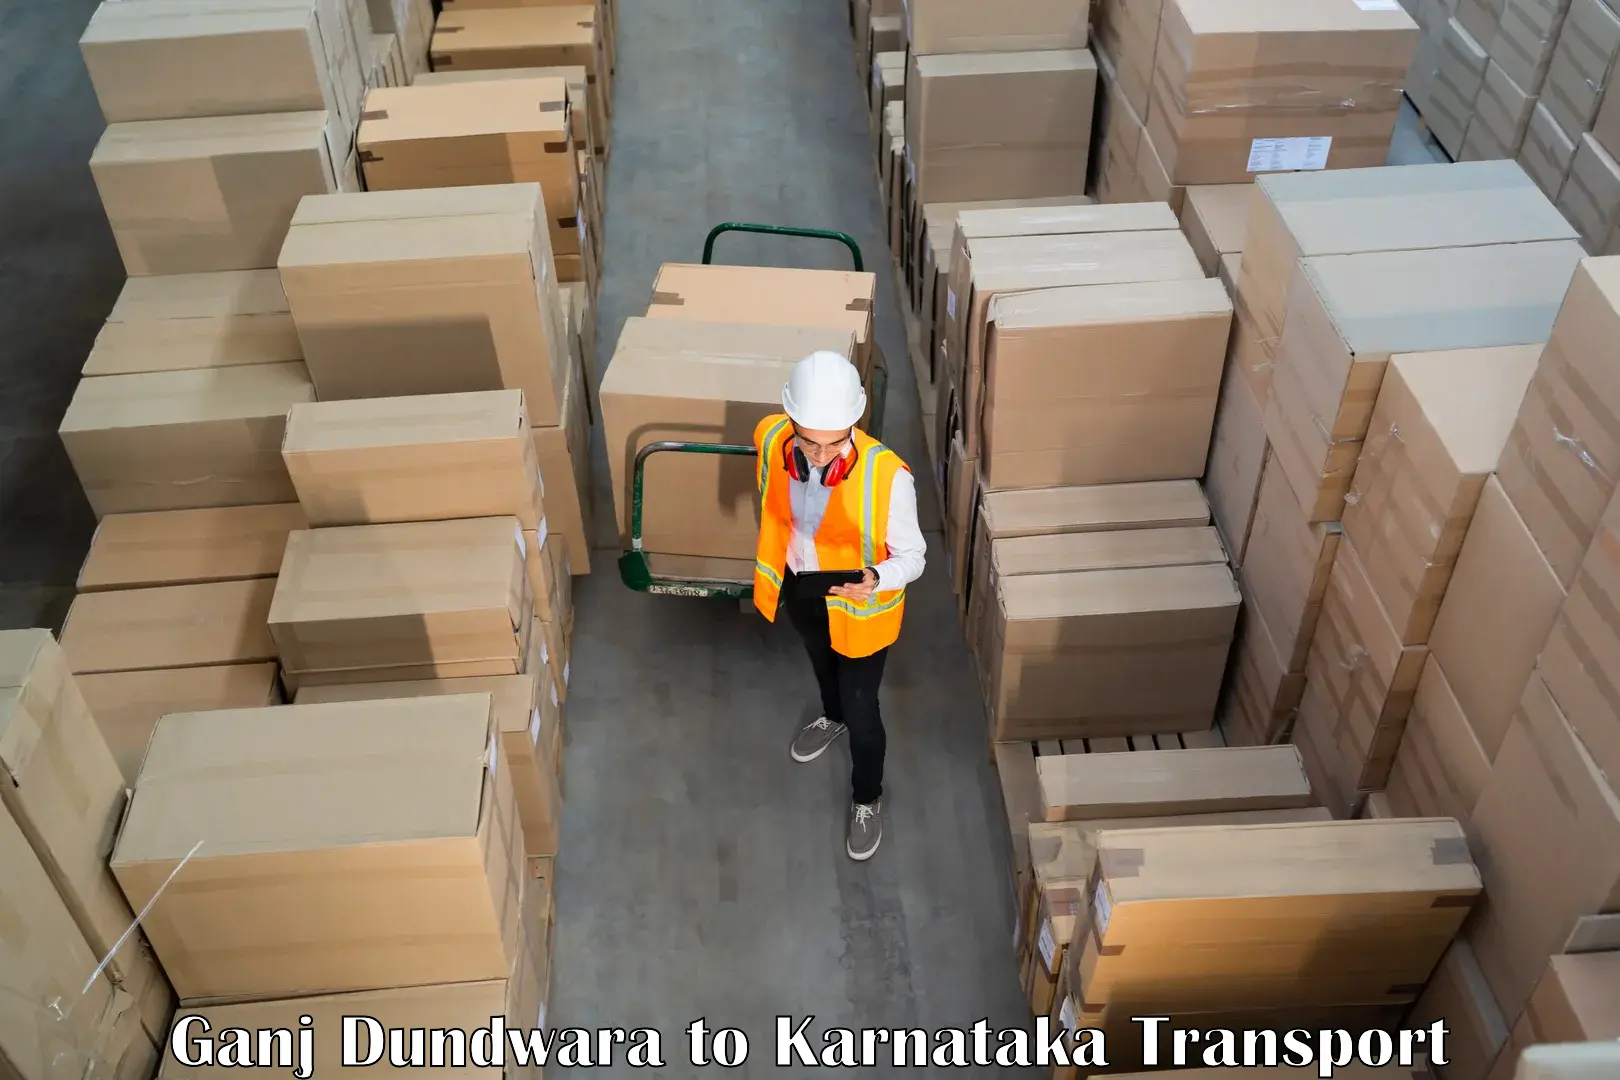 Transportation services Ganj Dundwara to IIT Dharwad